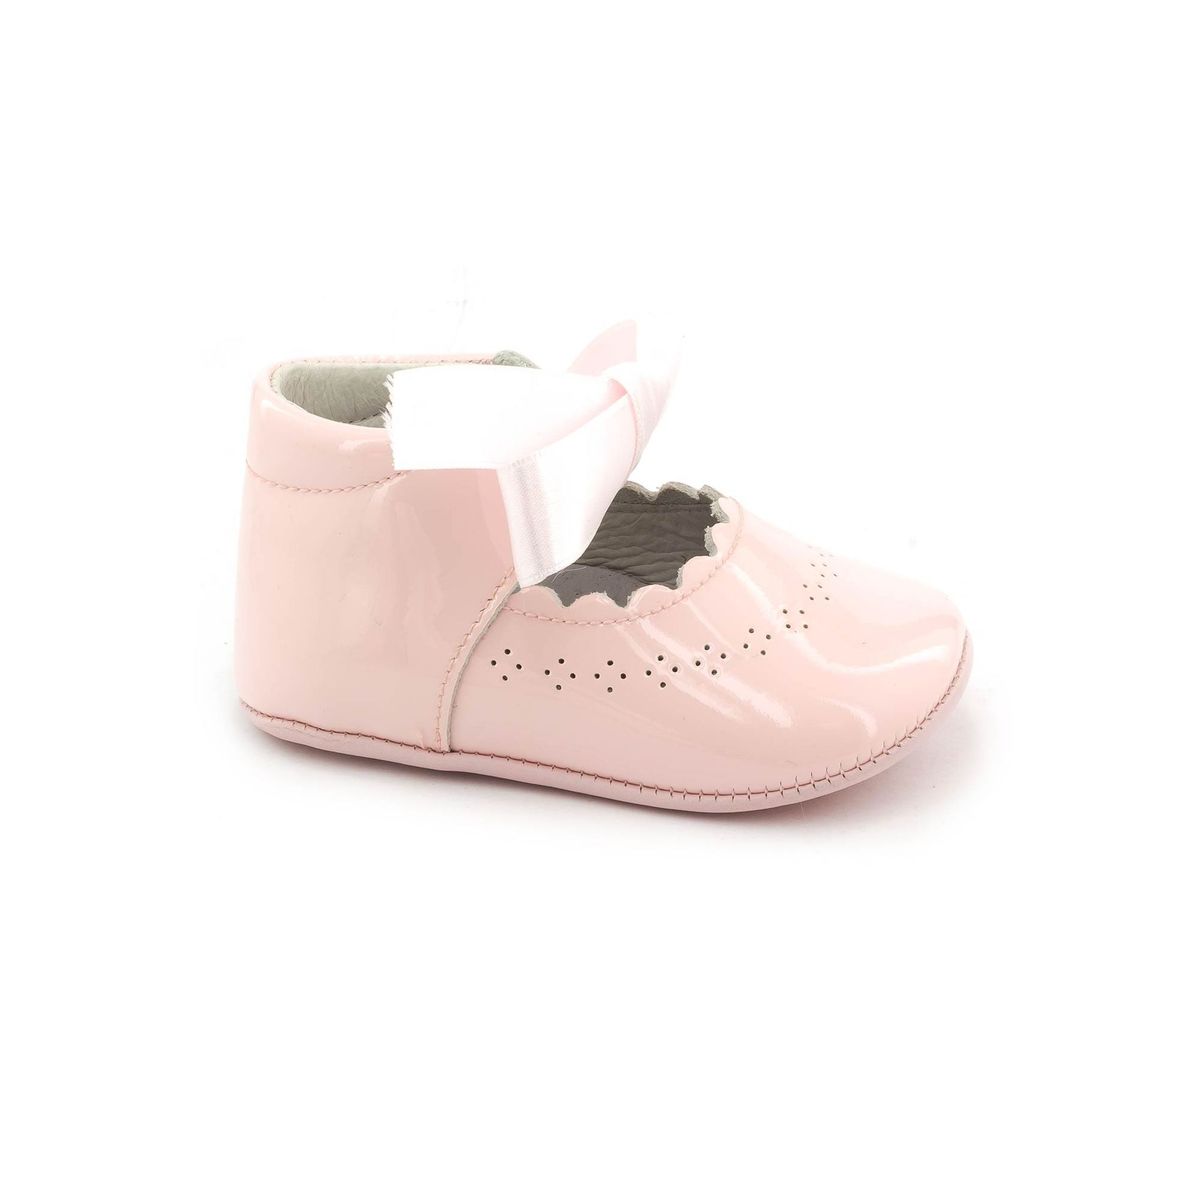 Carolilly Chaussures Bébé Fille Premiers Pas Bowknot Chaussures Nouveau-Né Princesse Baptême Cérémonie En PU Cuir Anti Slip 